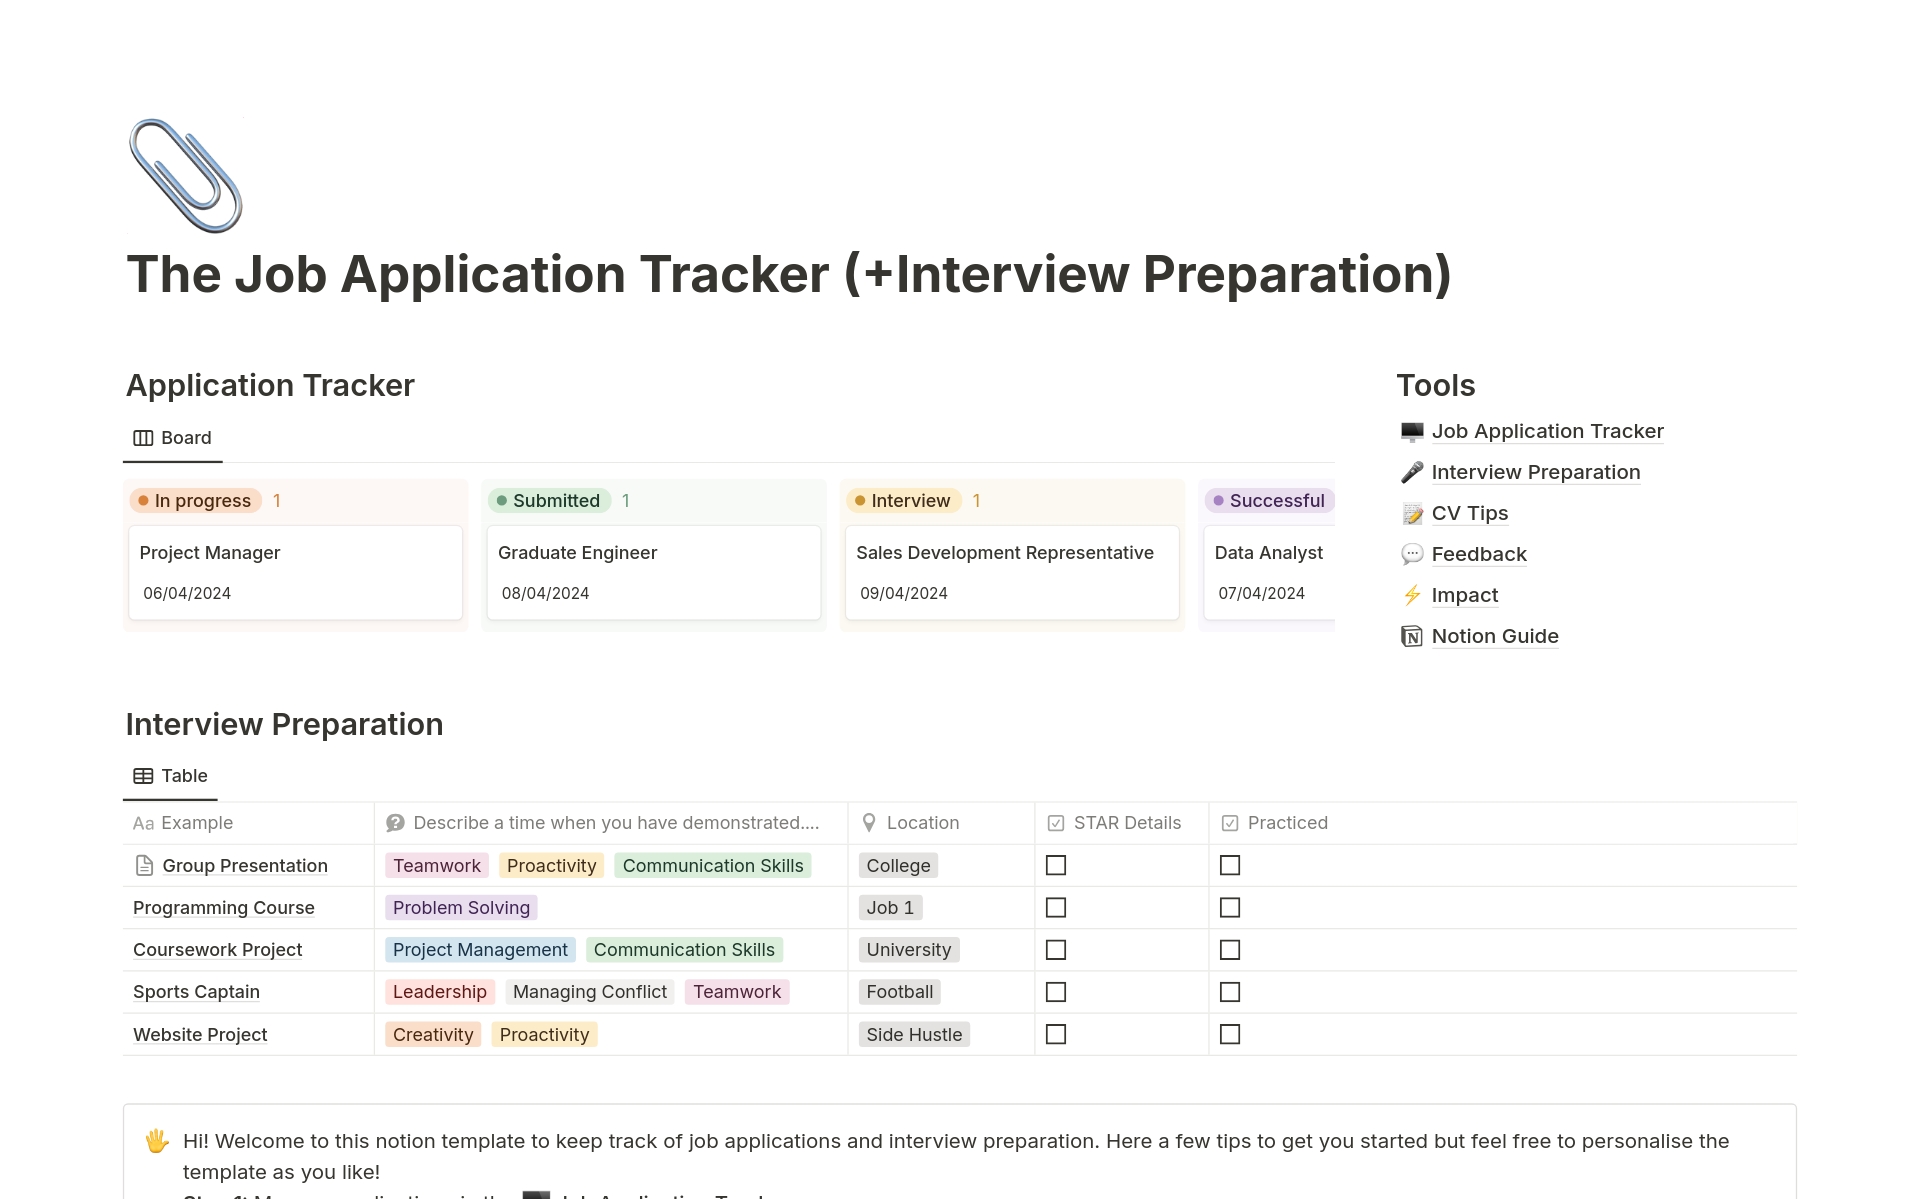 Uma prévia do modelo para Job Application Tracker & Interview Preparation